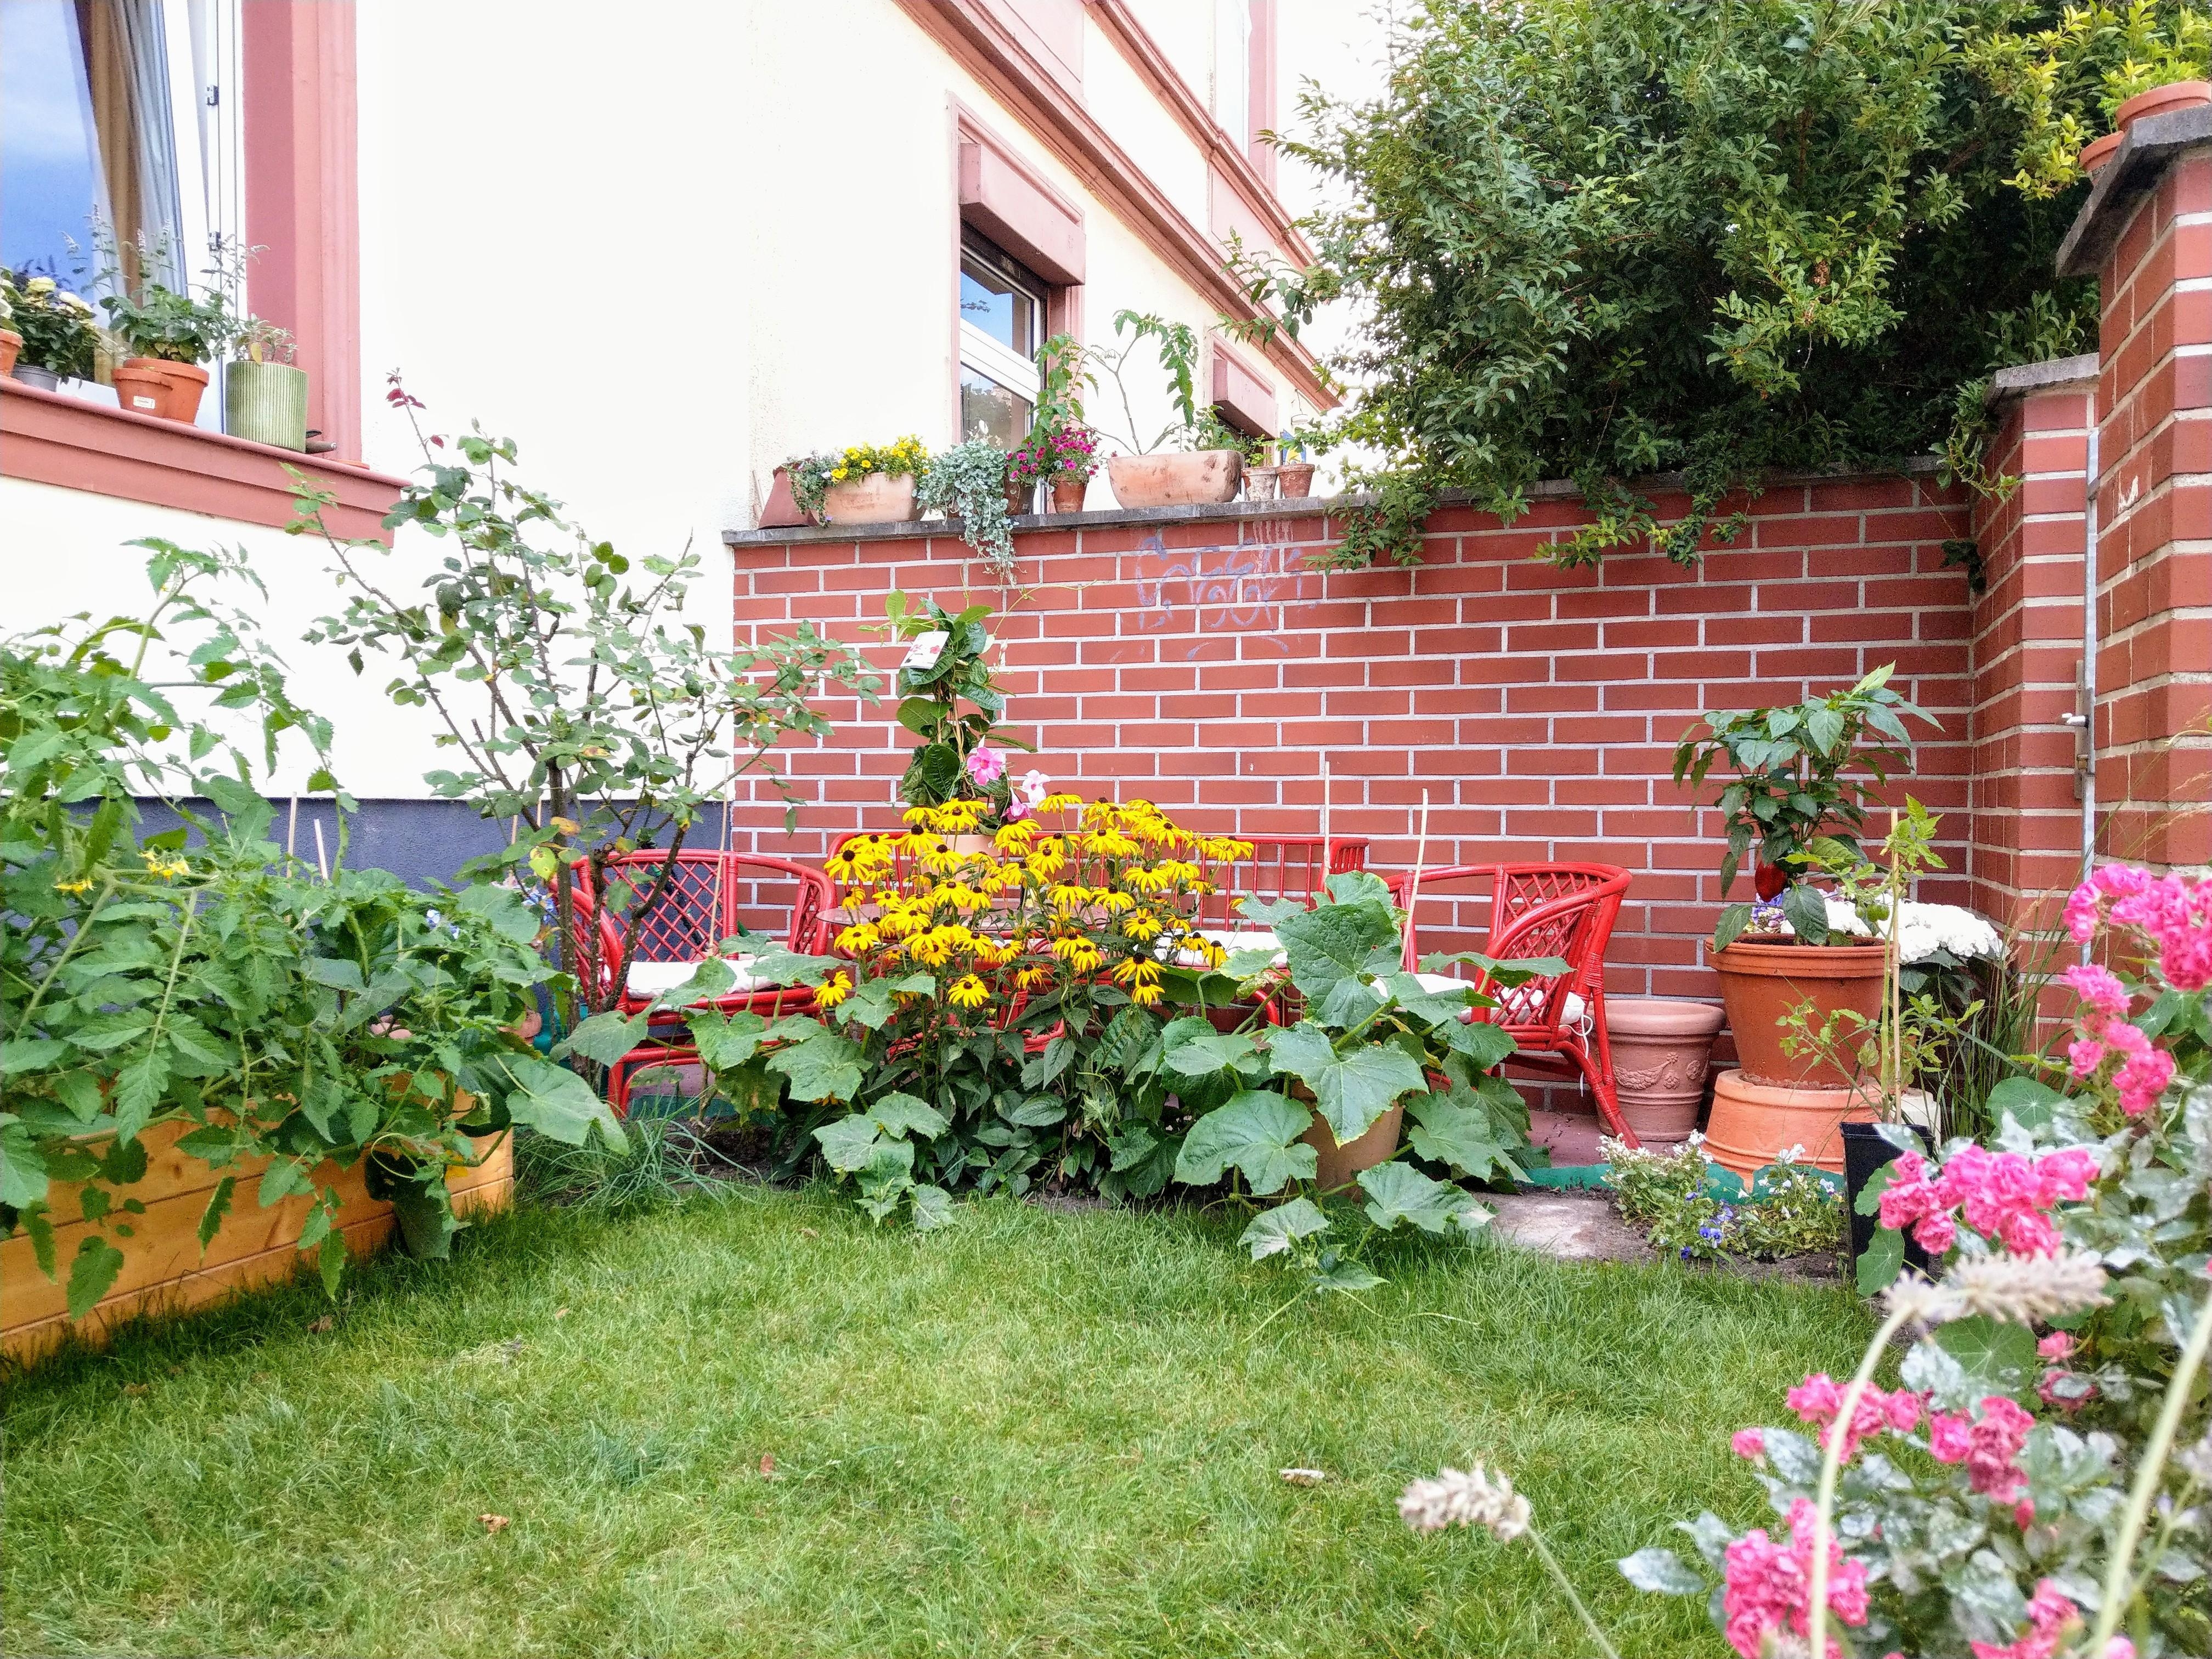 #outdoorweek
Hier ist unser kleiner Garten mitten in der Stadt. Sowas hat man selten, weshalb wir ihn umso mehr lieben!